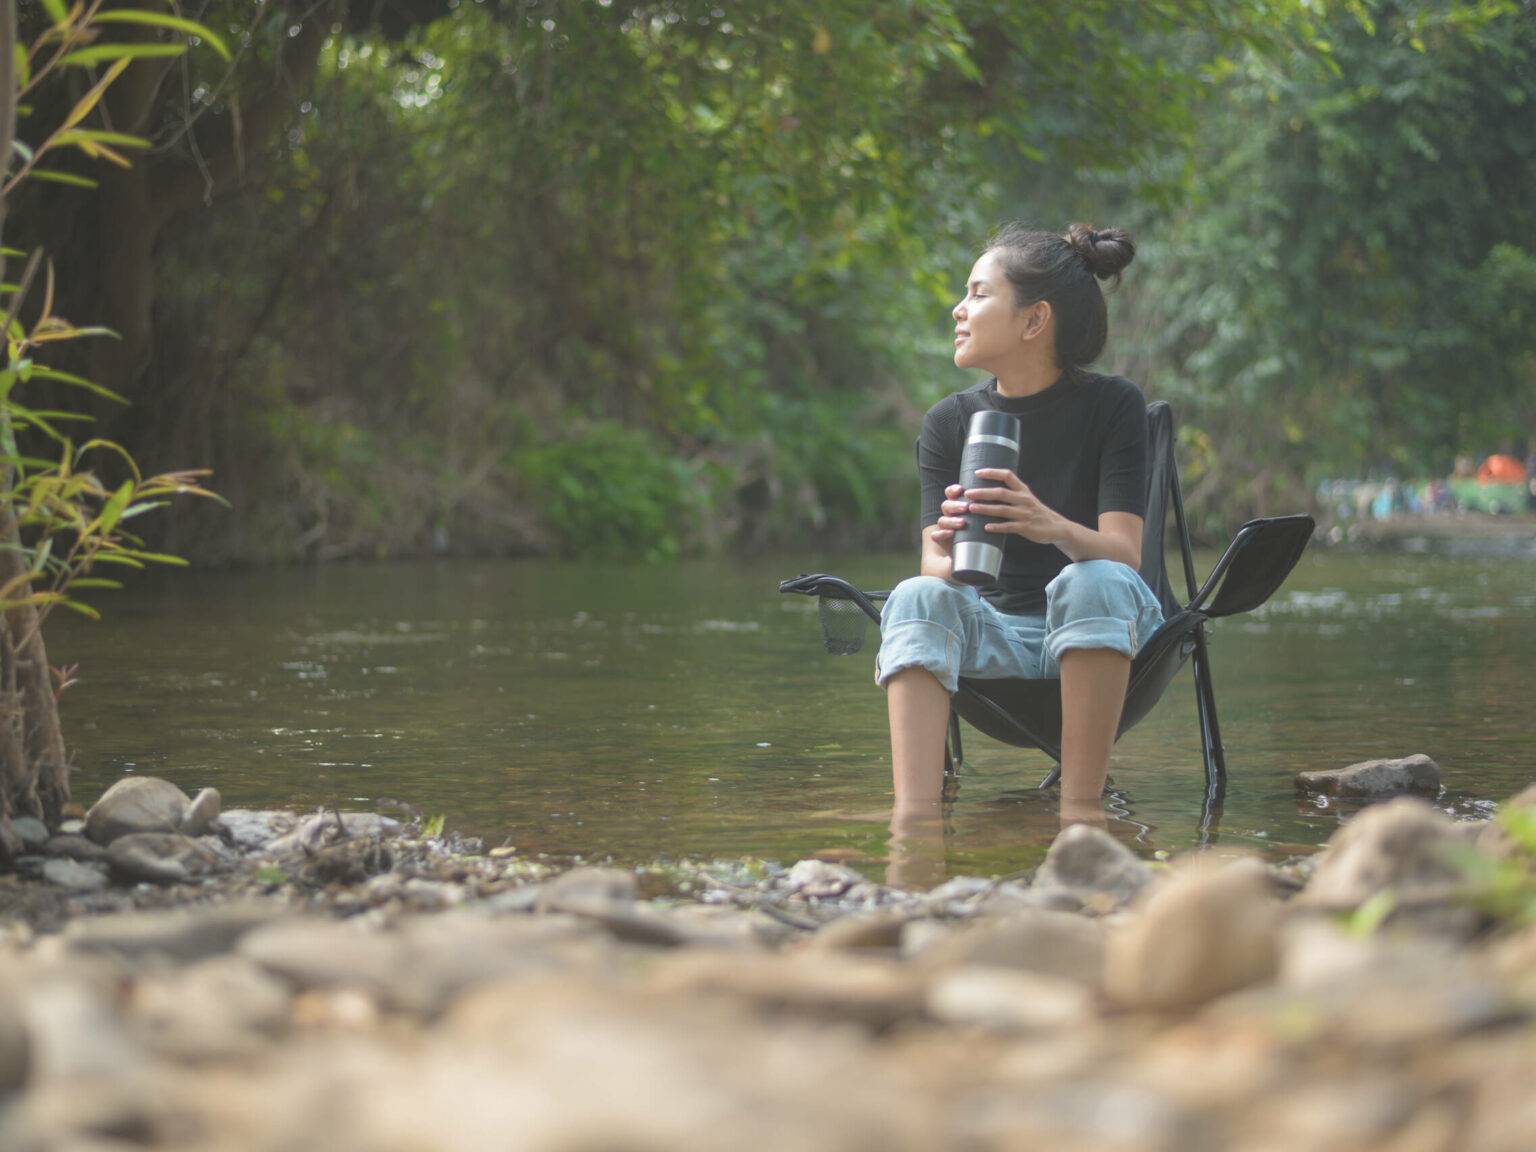 Idyllische Umgebung am See, Frau entspannt im Campingsitz am Wasser mit einem nützlichen Kaffee-Gadget.